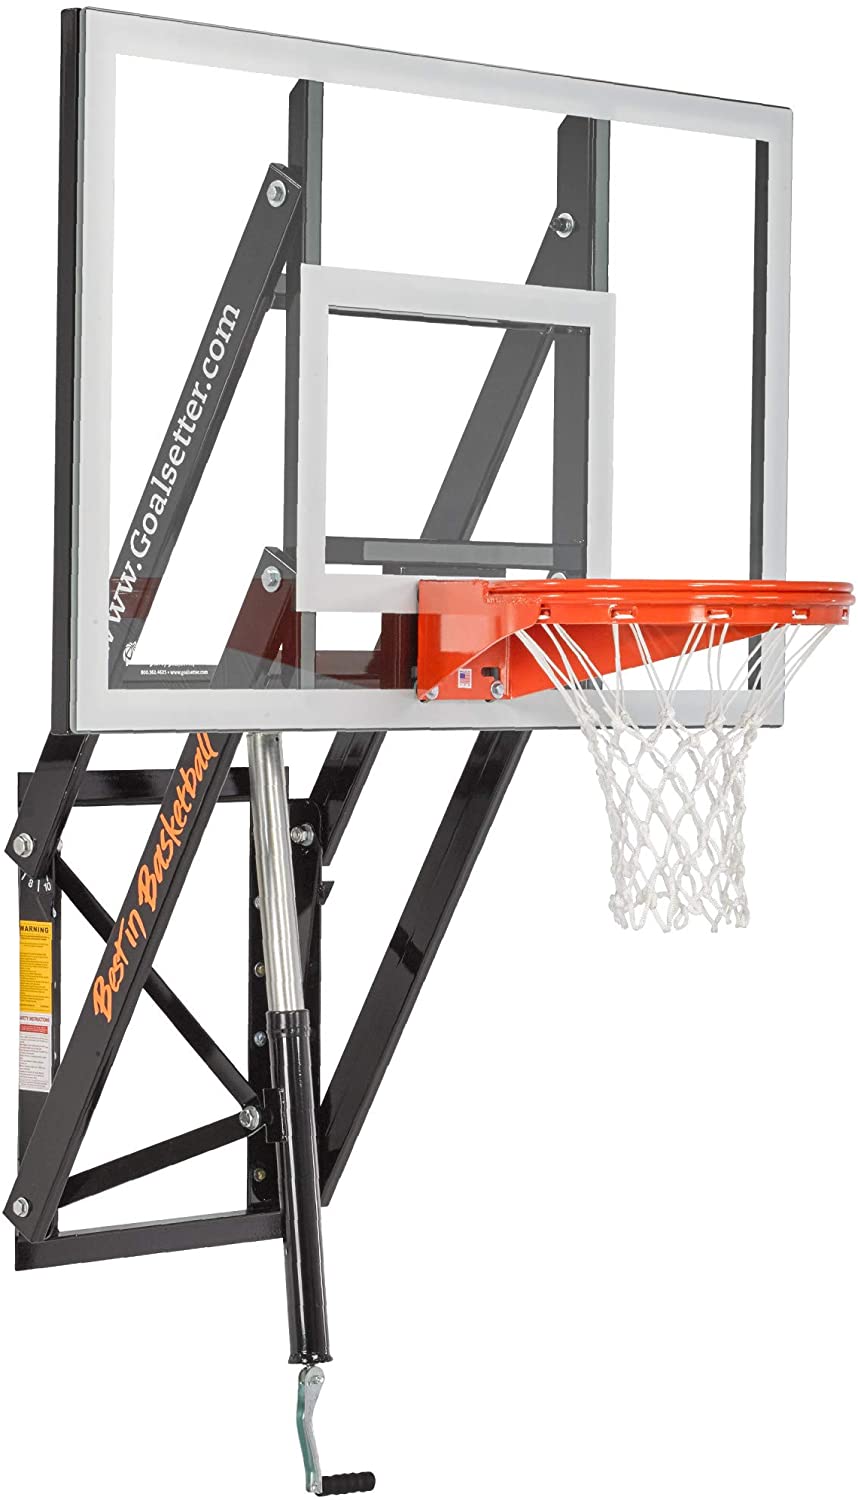 Goalsetter Adjustable Glass Backboard Wall Mounted Basketball Goal